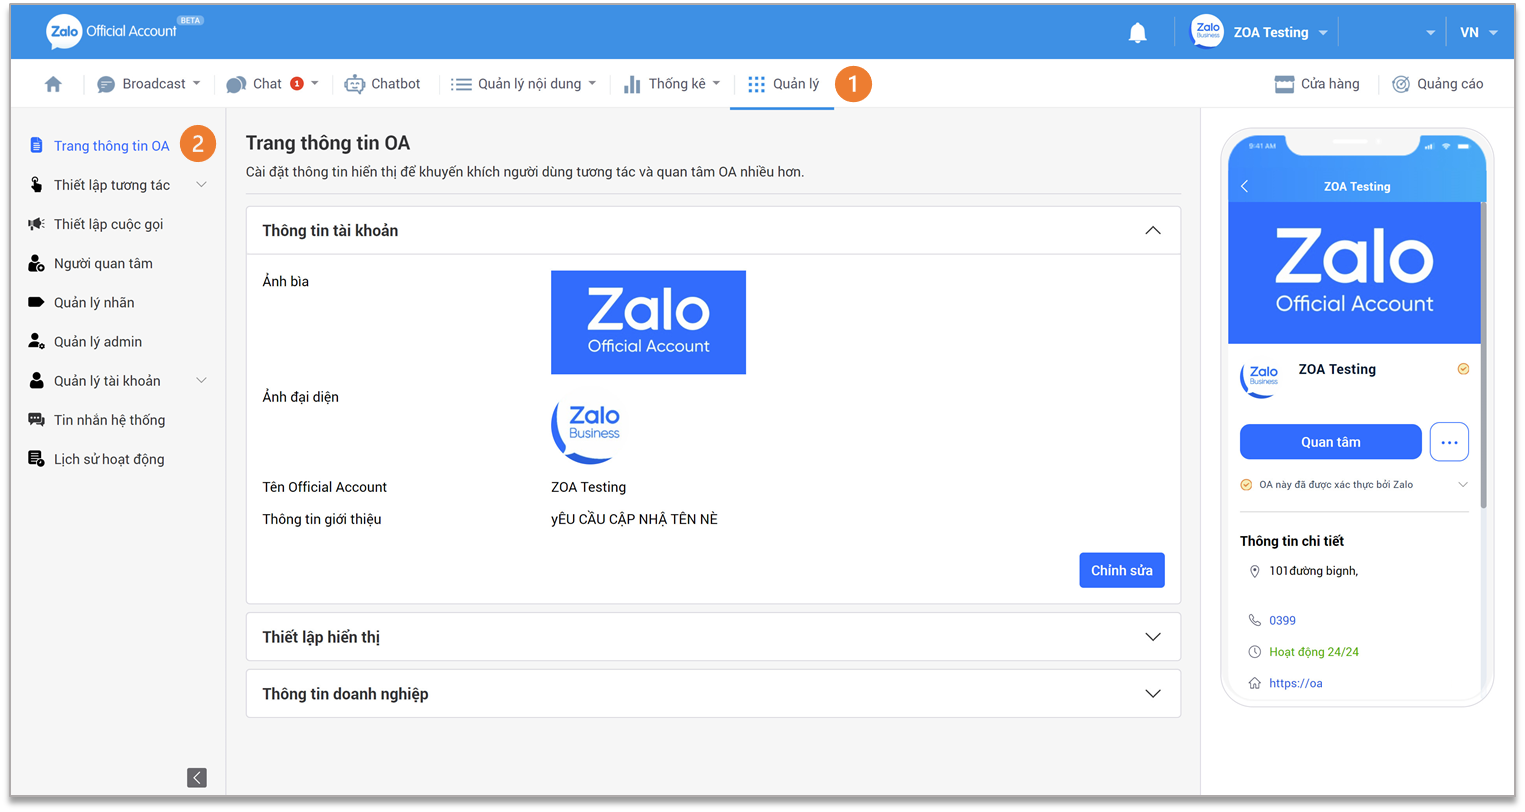 Thiết lập OA trên Zalo để tận dụng tiềm năng quảng bá sản phẩm, dịch vụ của bạn trên nền tảng mạng xã hội phổ biến nhất hiện nay. Tìm hiểu ngay về cách thiết lập và quản lý trang OA của mình trên Zalo để gây ấn tượng với khách hàng tiềm năng.